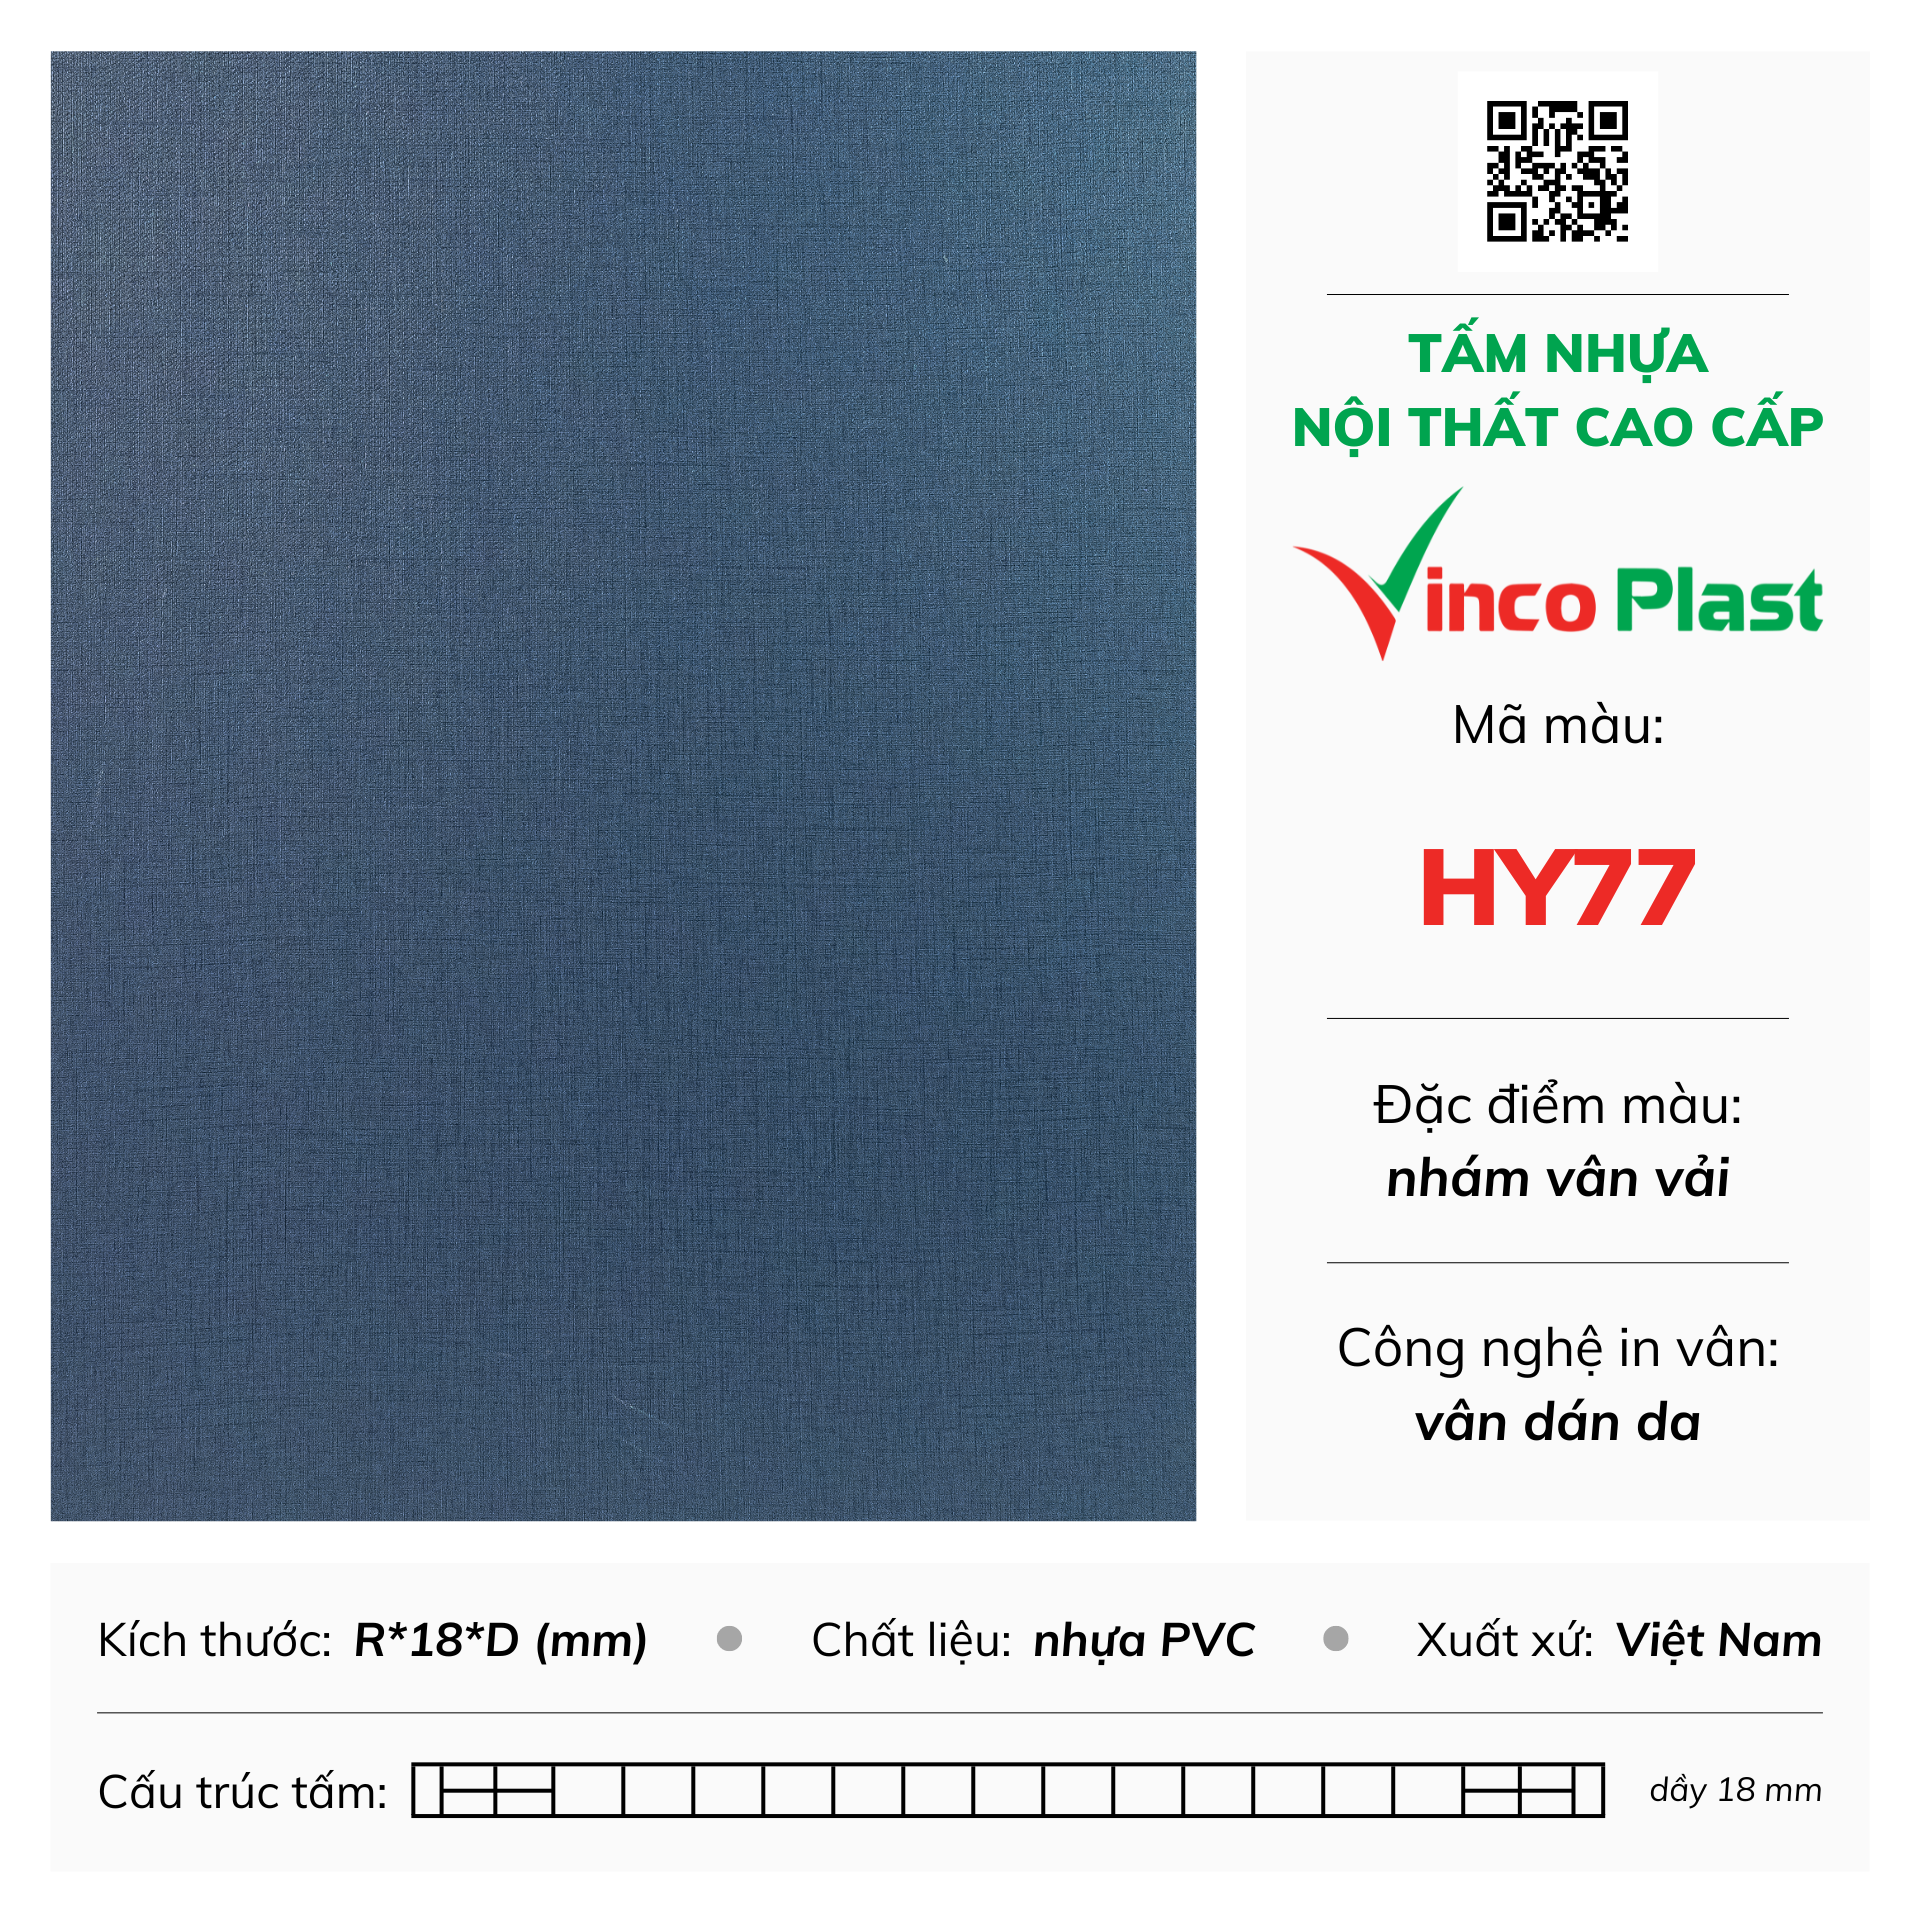 Tấm nhựa nội thất cao cấp Vincoplast màu hy77